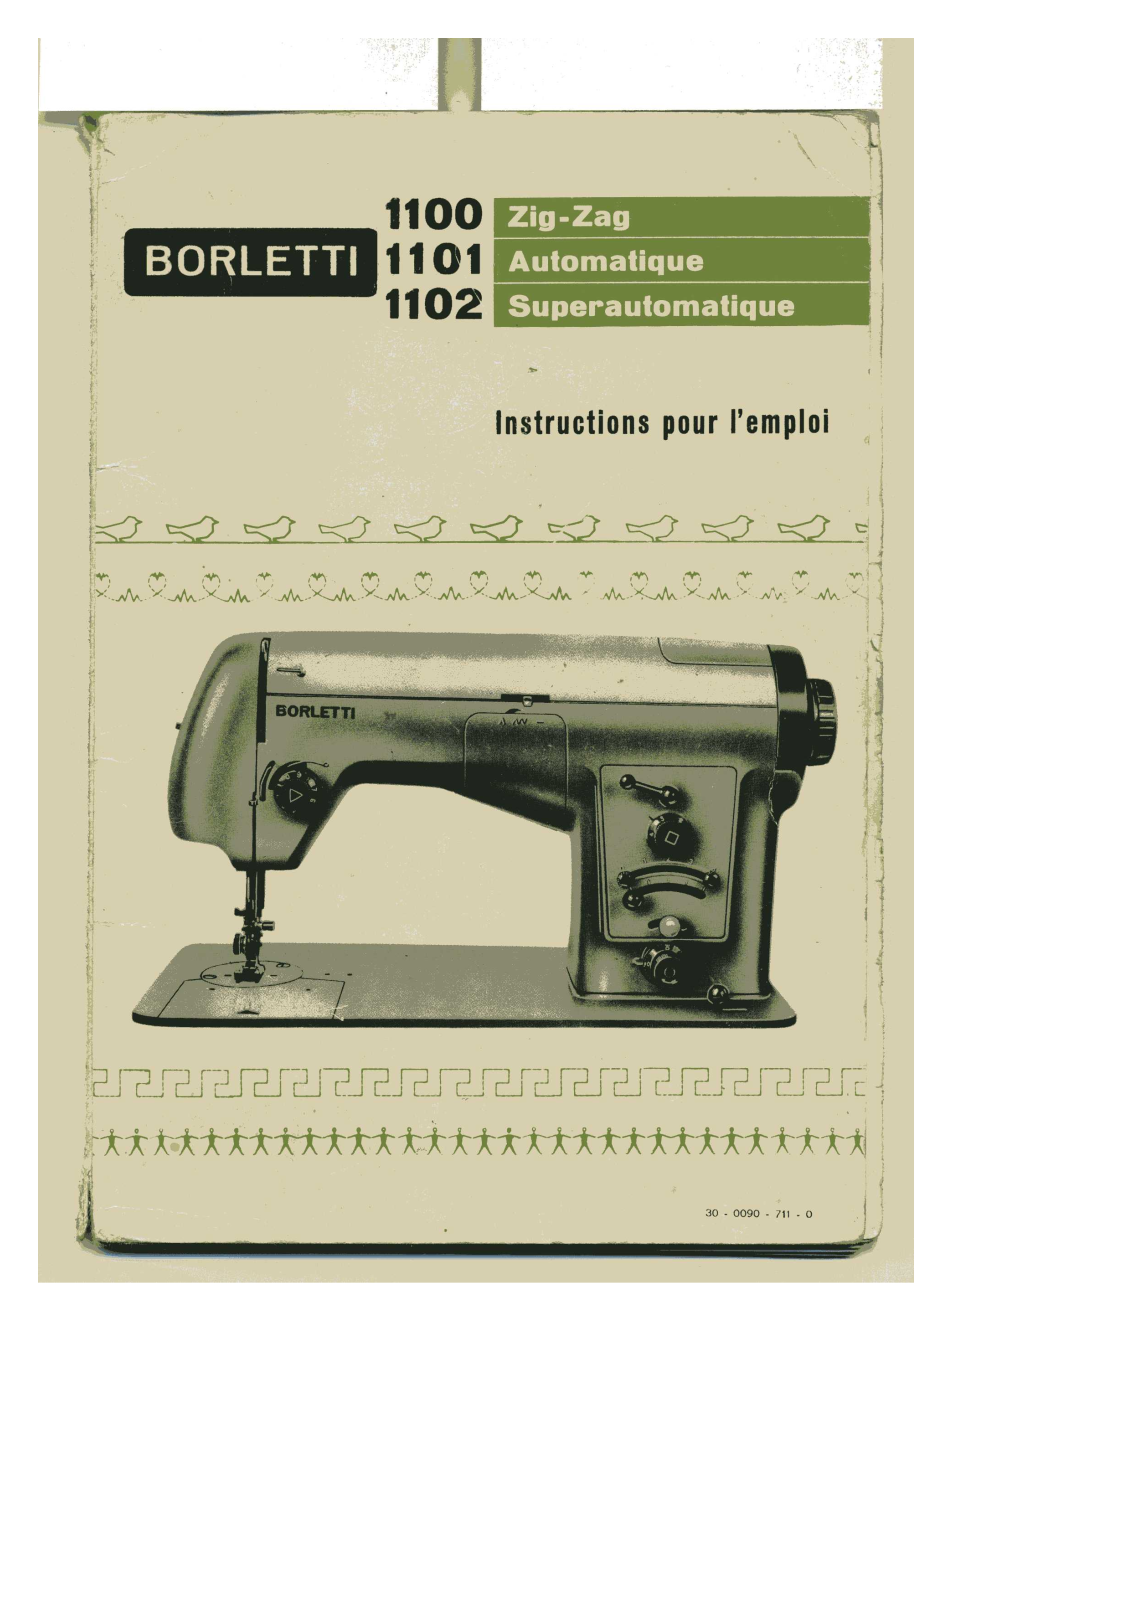 BORLETTI 1100 ZIGZAG, 1101 AUTOMATIQUE User Manual